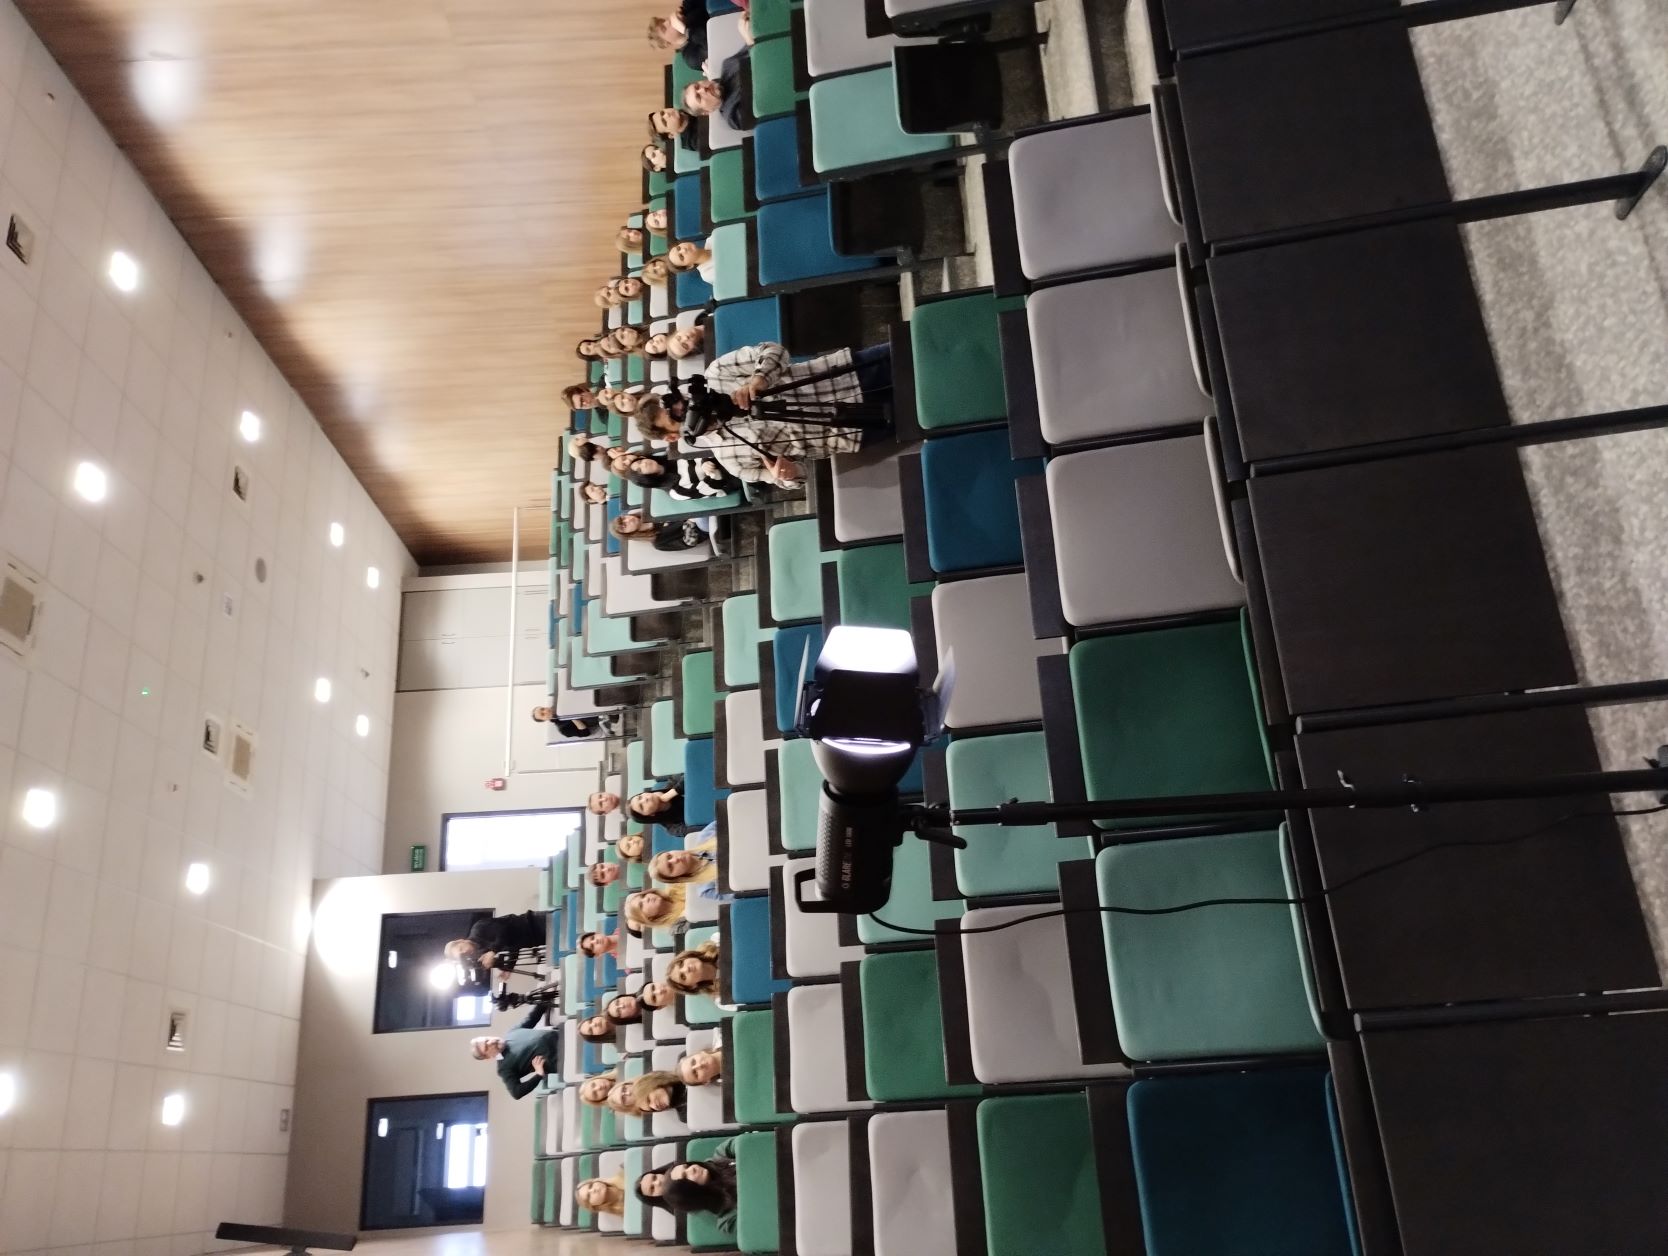 na aulia na krzesełkach siedzą uczestnicy wykładu. Widać na schodach także operatora kamery.